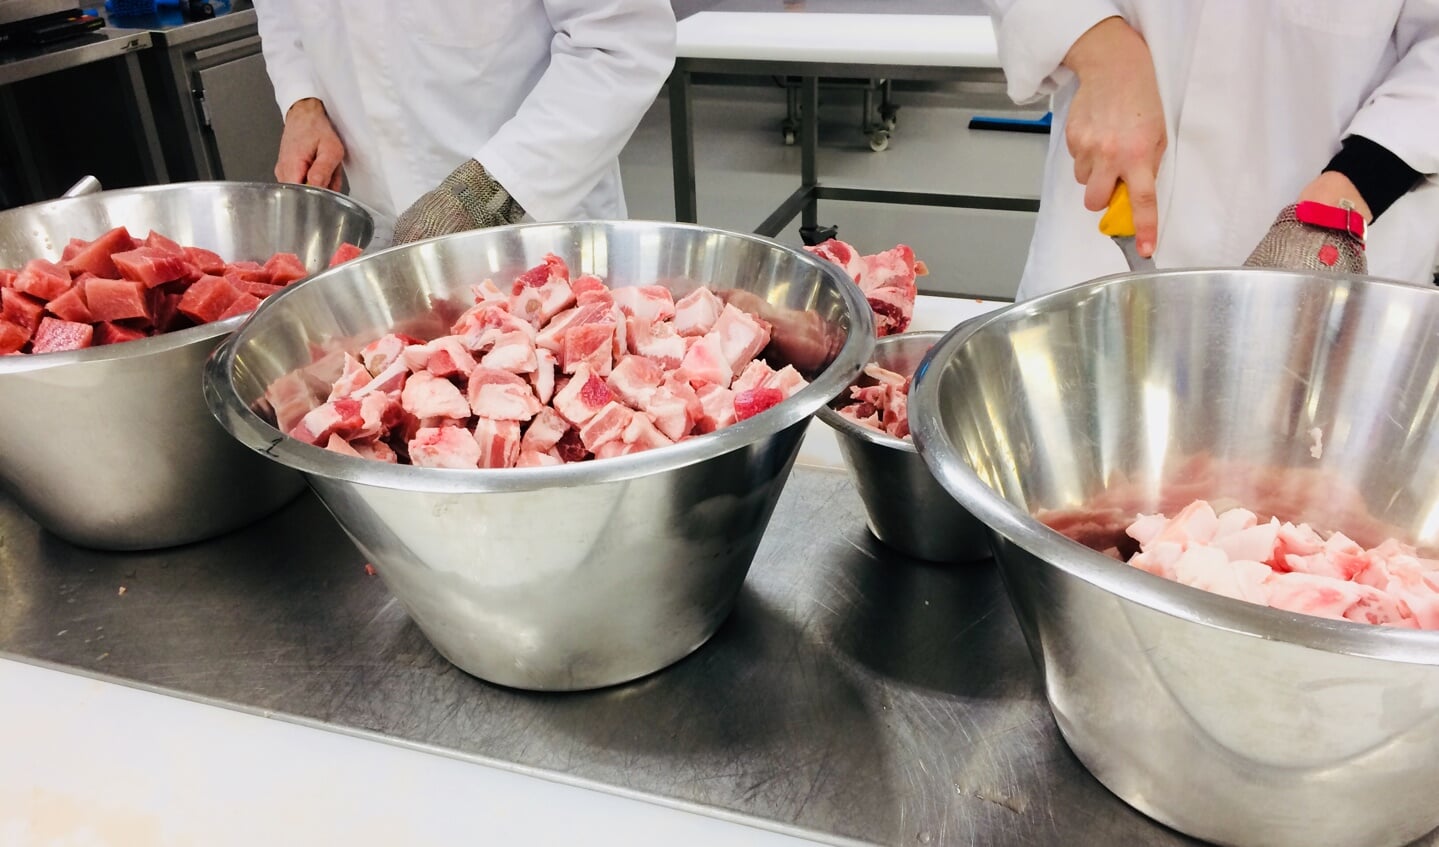 Evy de Wilde en Sophie van der Linden van Food Innovation van HAS Den Bosch hebben een nieuw varkensvleesproduct ontwikkeld, op basis van slachtproducten van varkens van de partners in ‘Van Kop tot Staart’.